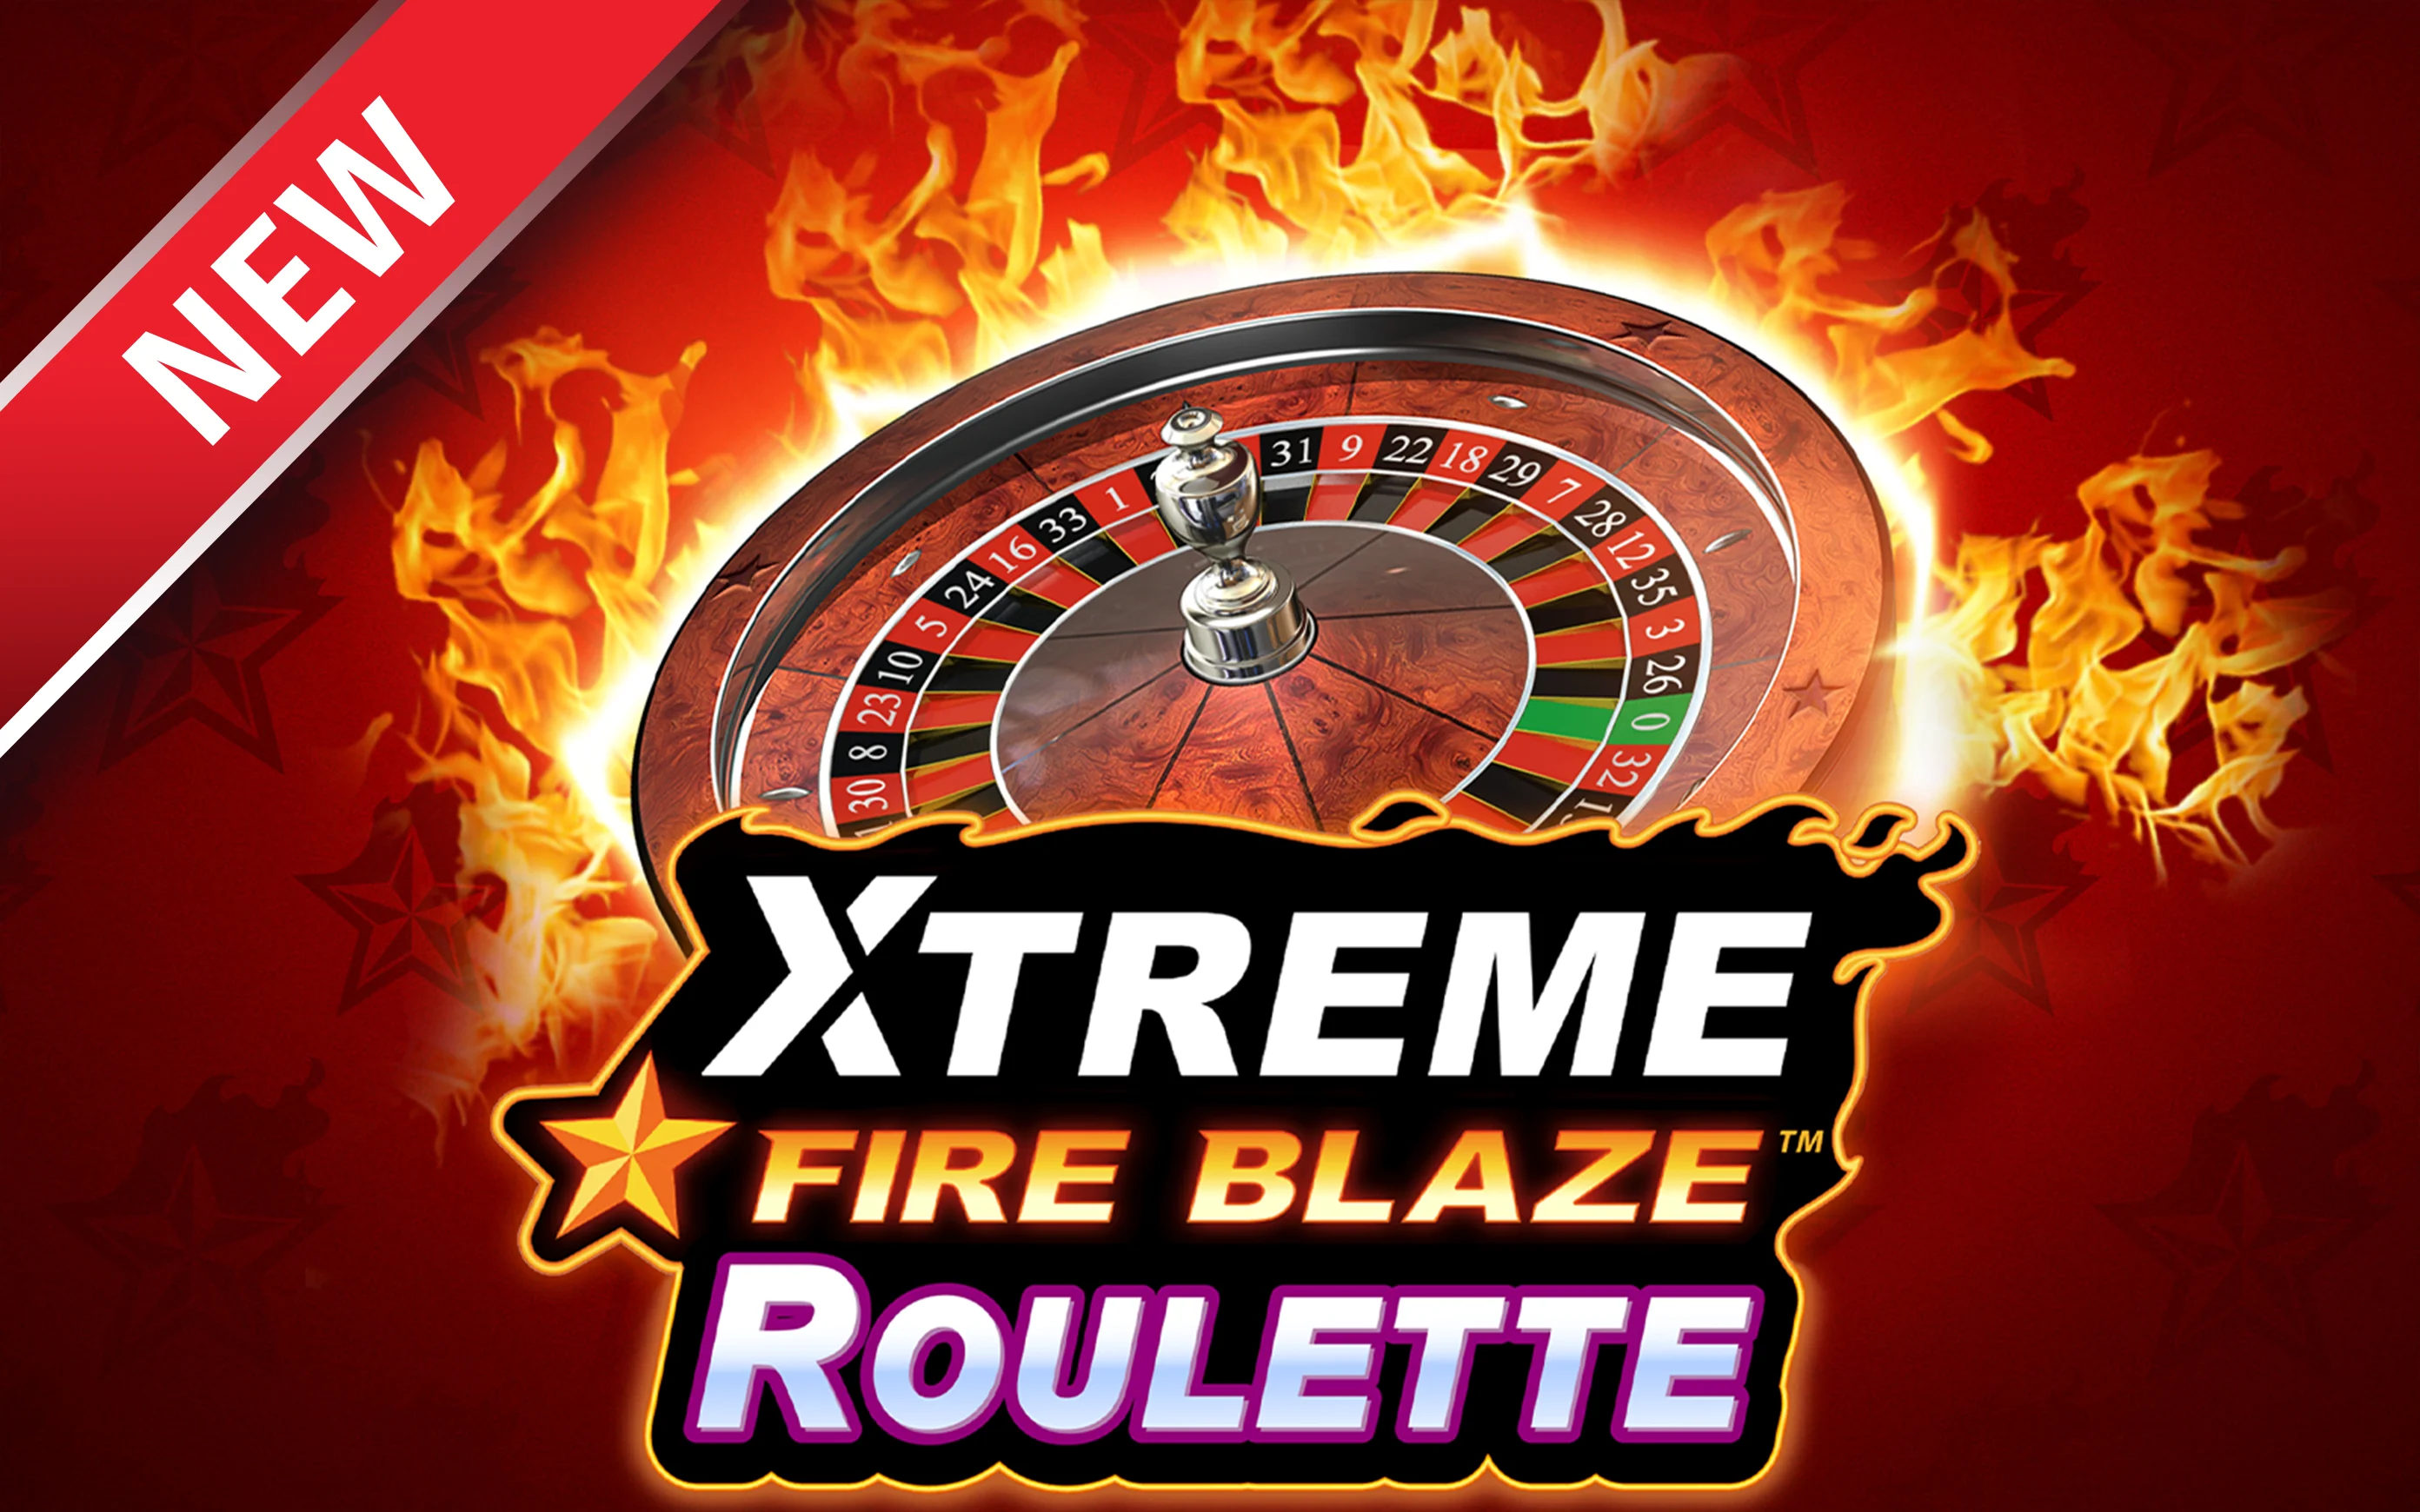 Gioca a Xtreme Fire Blaze Roulette sul casino online Starcasino.be